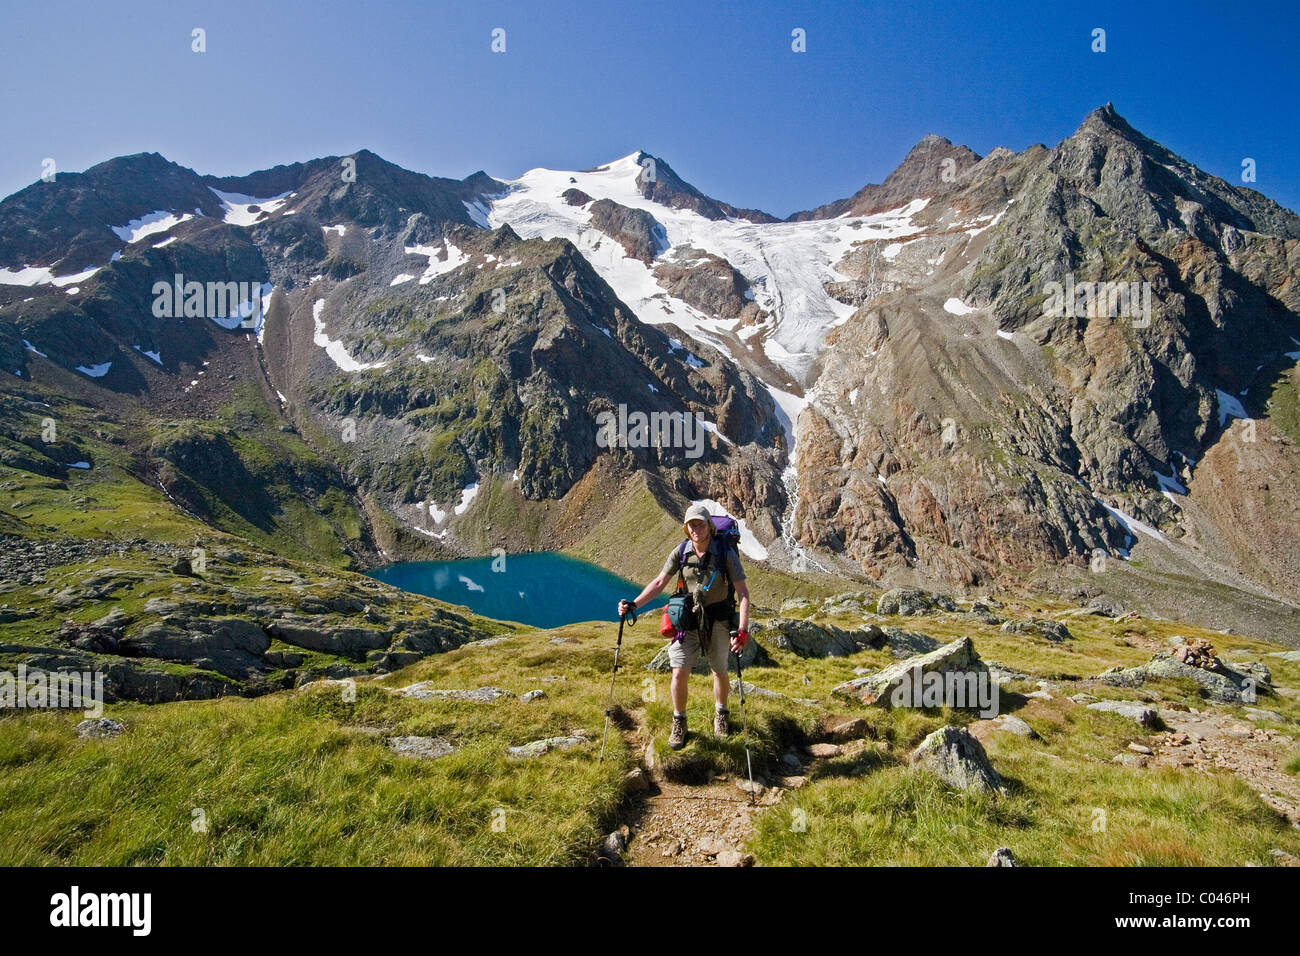 Un randonneur se dresse devant l'Grausee Freiger Wilder, glacier, et Cima Libera sur le Hohenweg Stubai dans le Tyrol, en Autriche. Banque D'Images